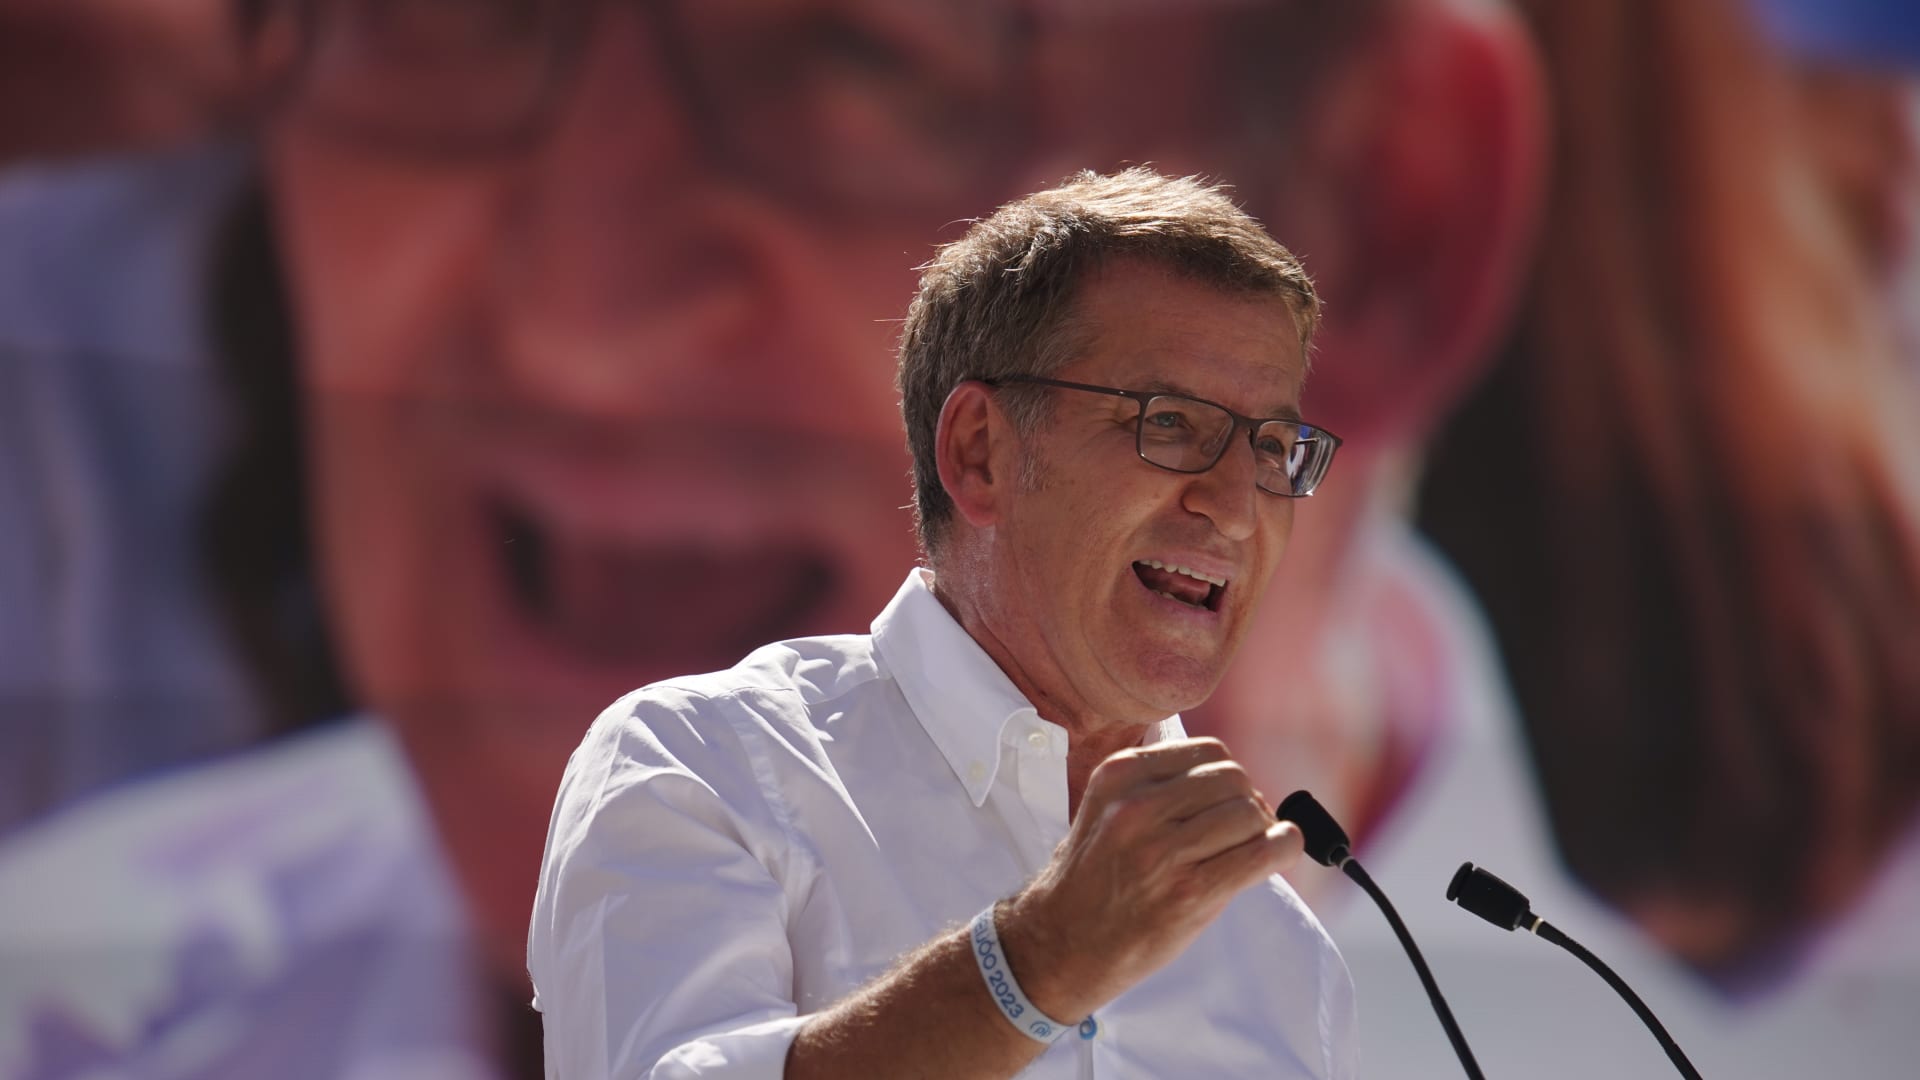 Le leader de droite espagnol échoue dans sa première tentative pour devenir Premier ministre